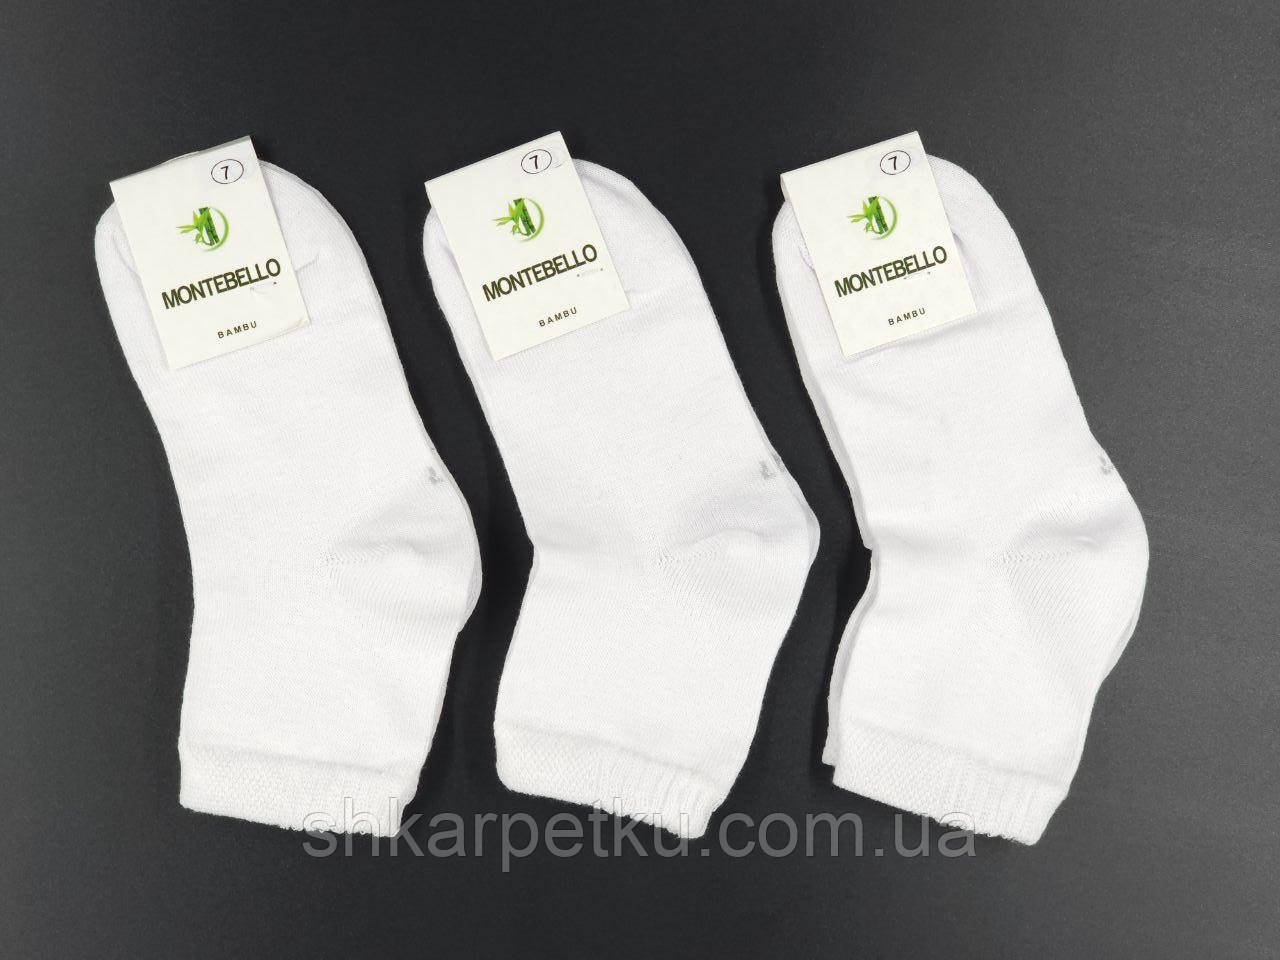 Шкарпетки підліткові Montebello шкарпетки дитячі для хлопчиків дівчаток розмір 1,3,5,7,9,11 років 12 шт в уп